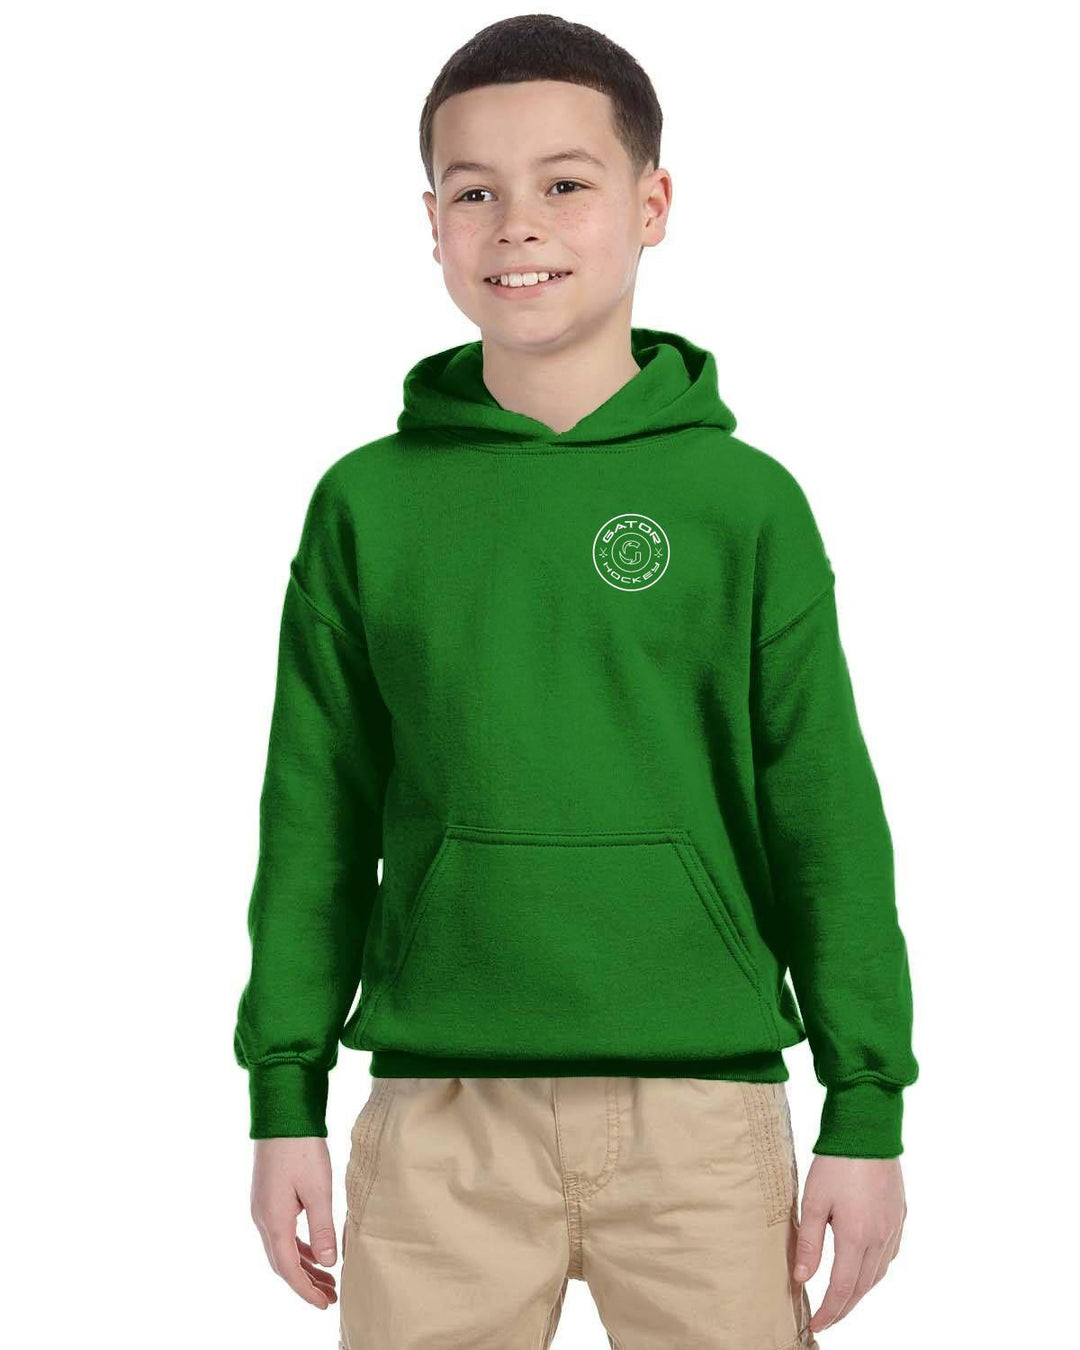 Unisex children's hoodie